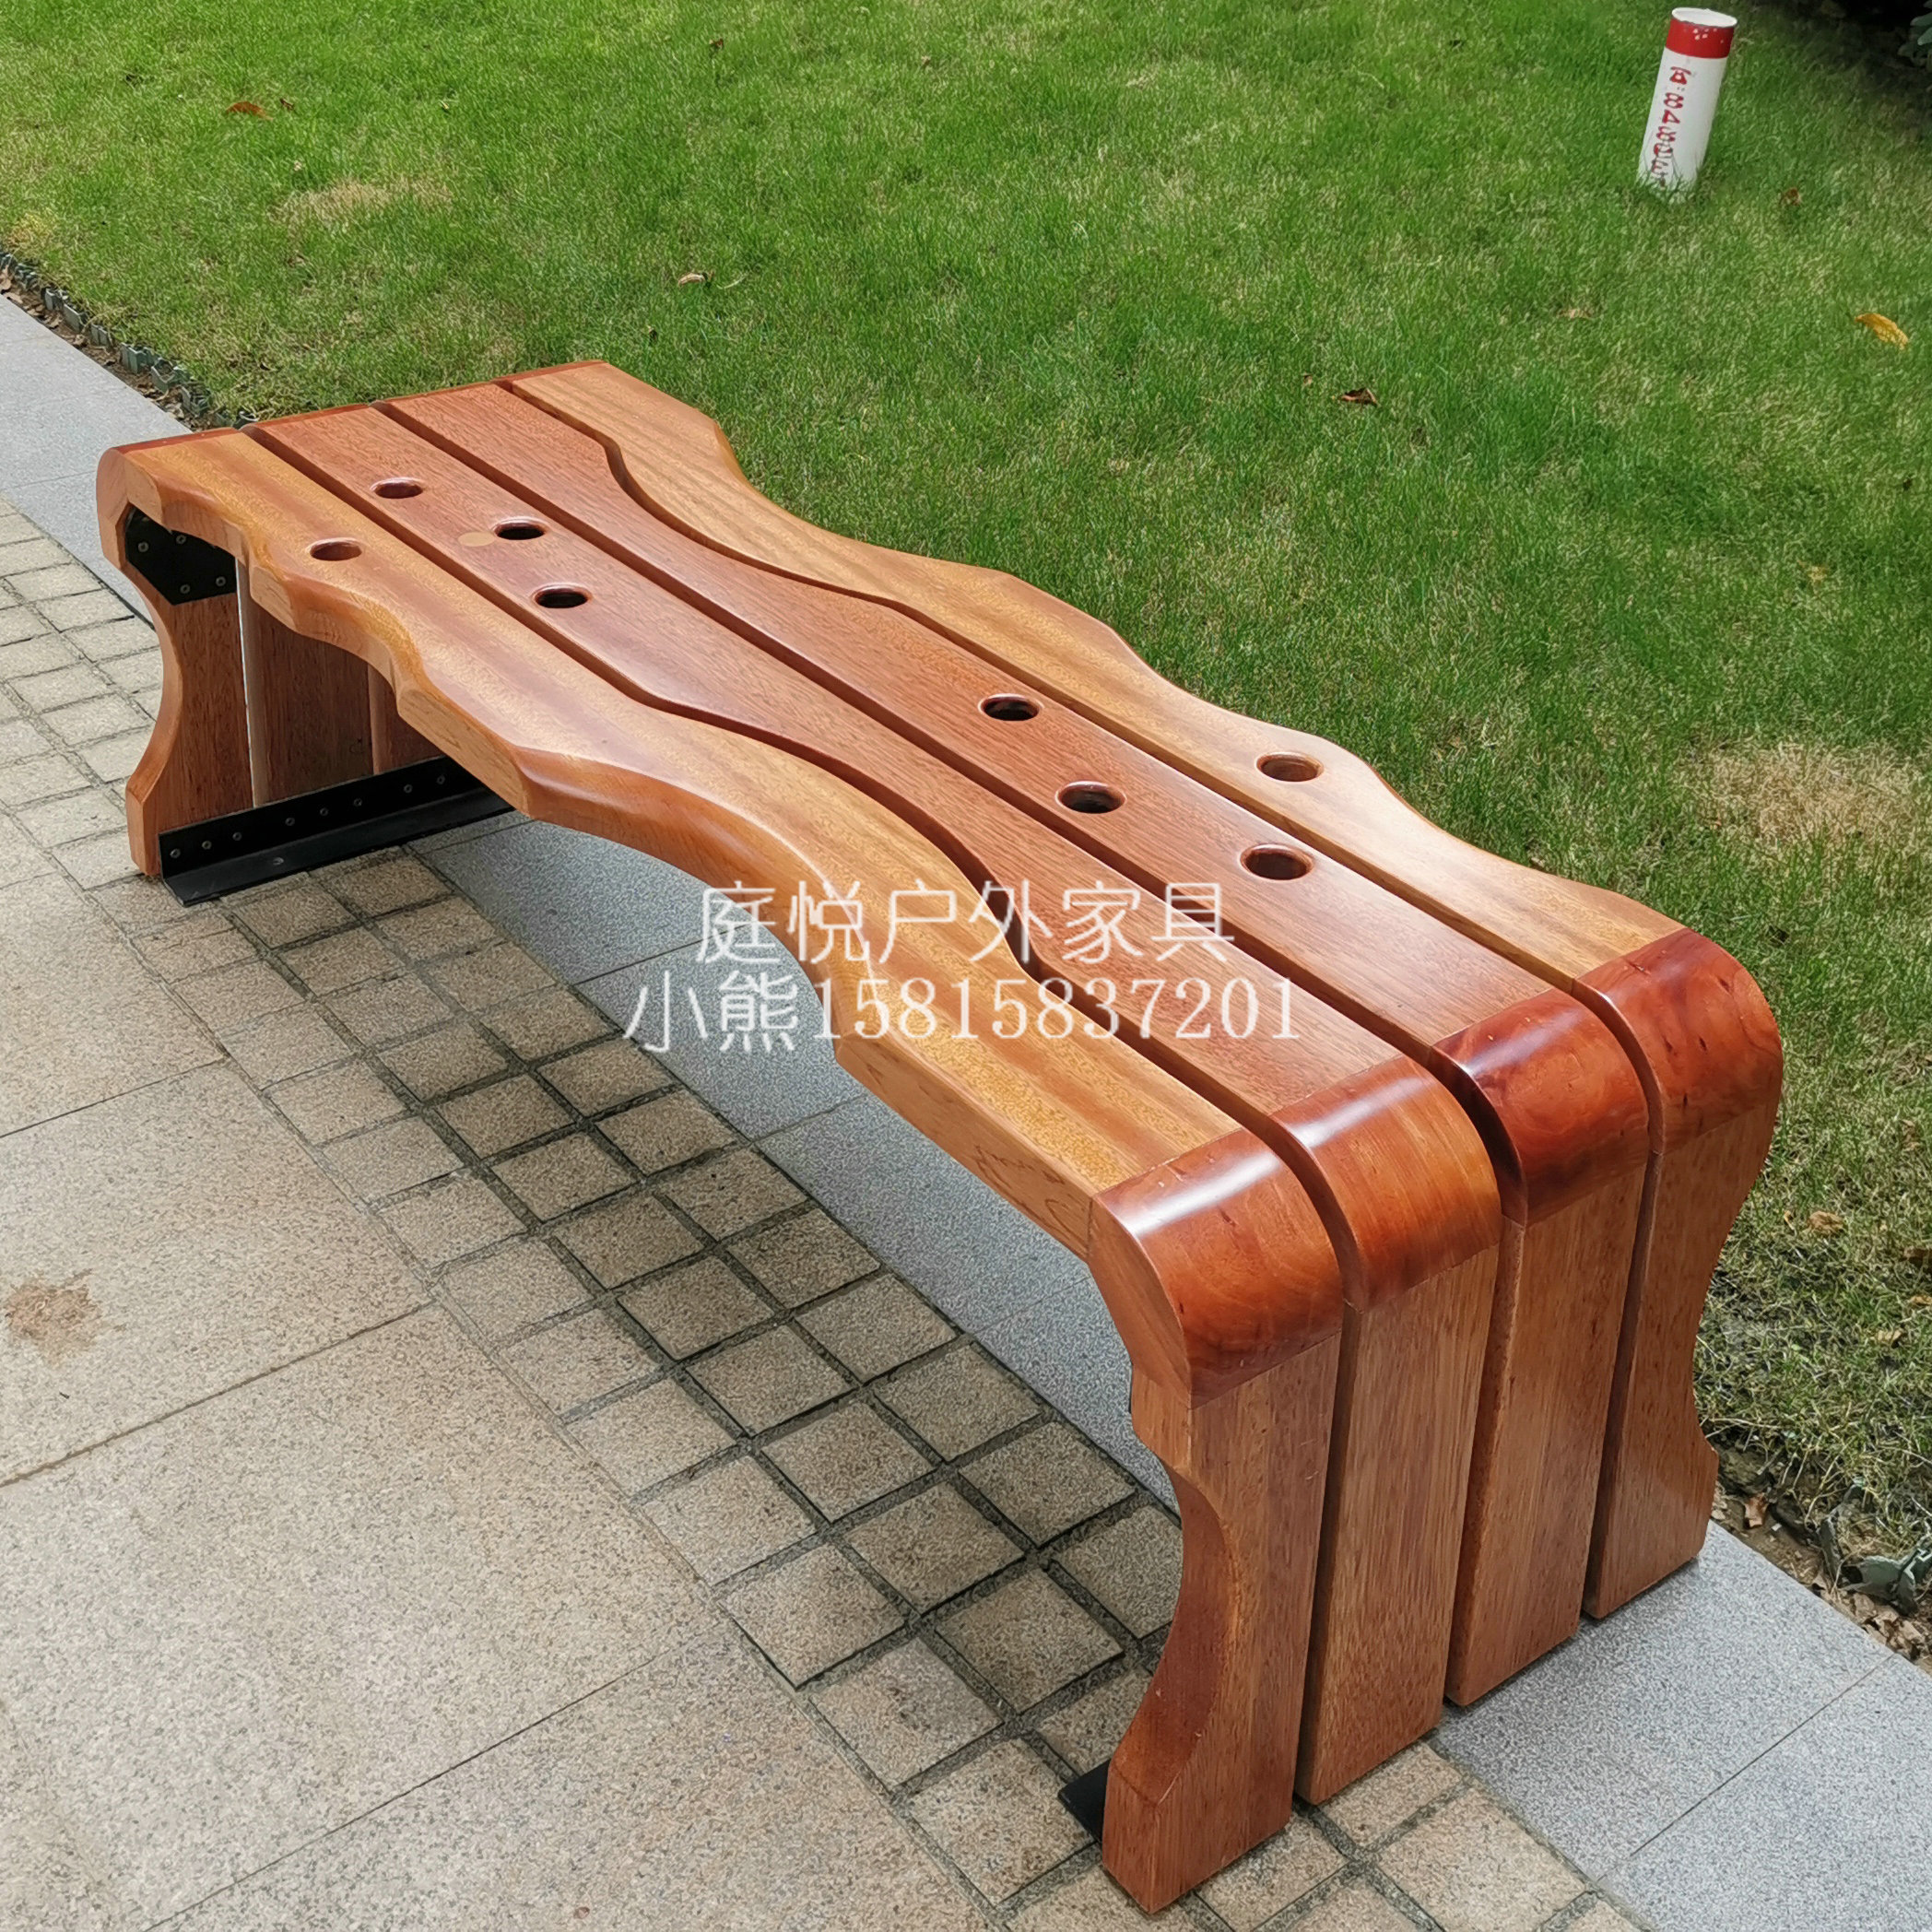 创意户外休息成品坐凳公园庭院露天休闲座椅防腐木长凳定做图片